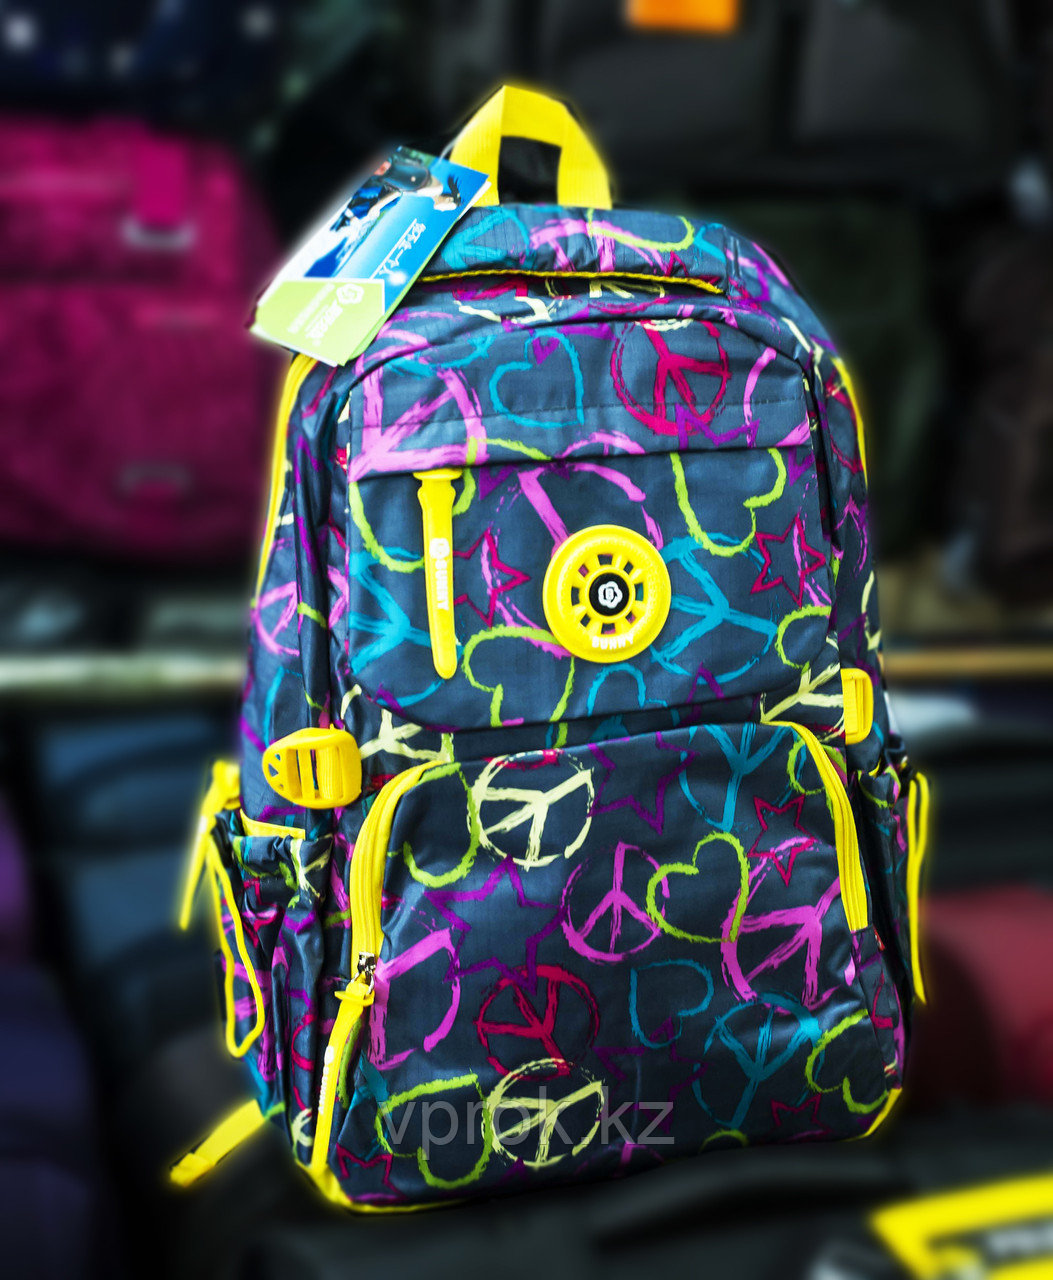 Рюкзак "Sunny" (желто-синий, с рисунками)